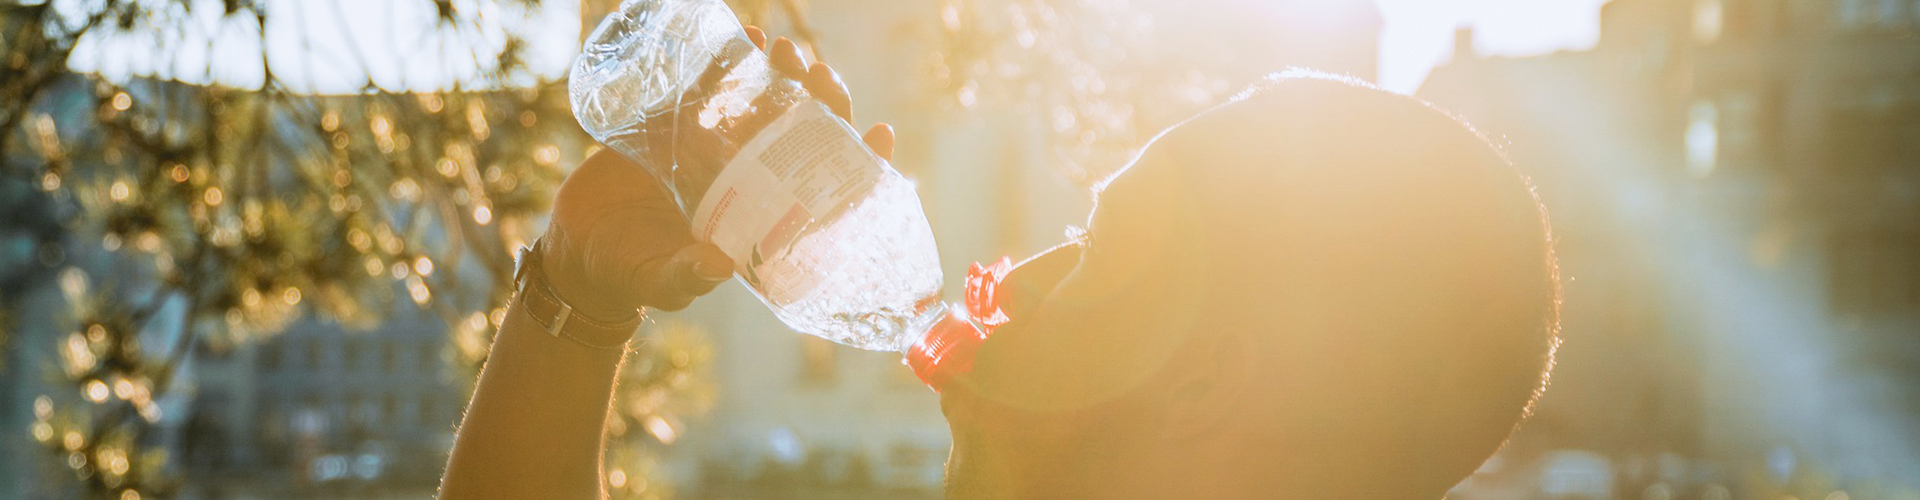 Bild på en person dricker vatten ur en plastflaska.